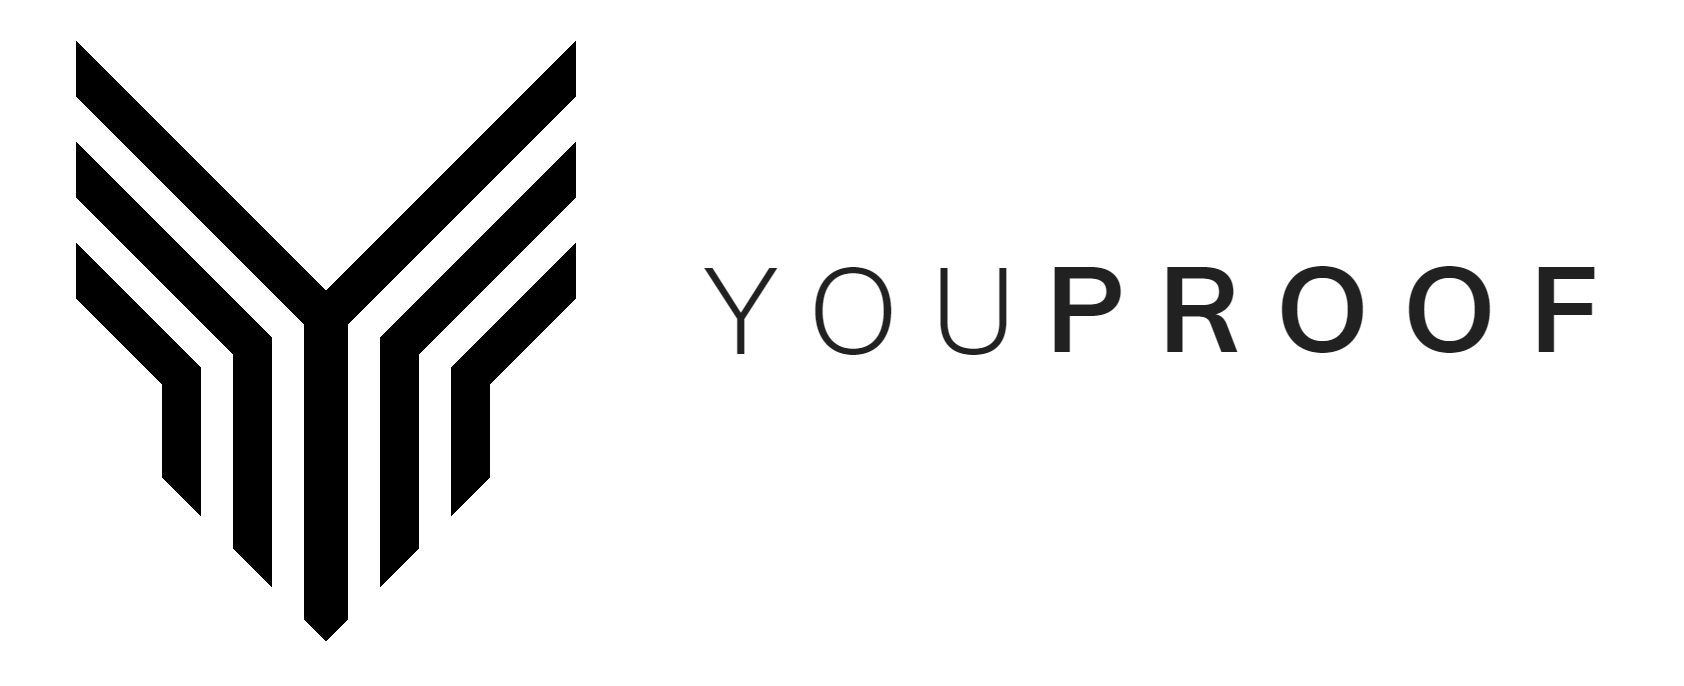 1 youproof logo